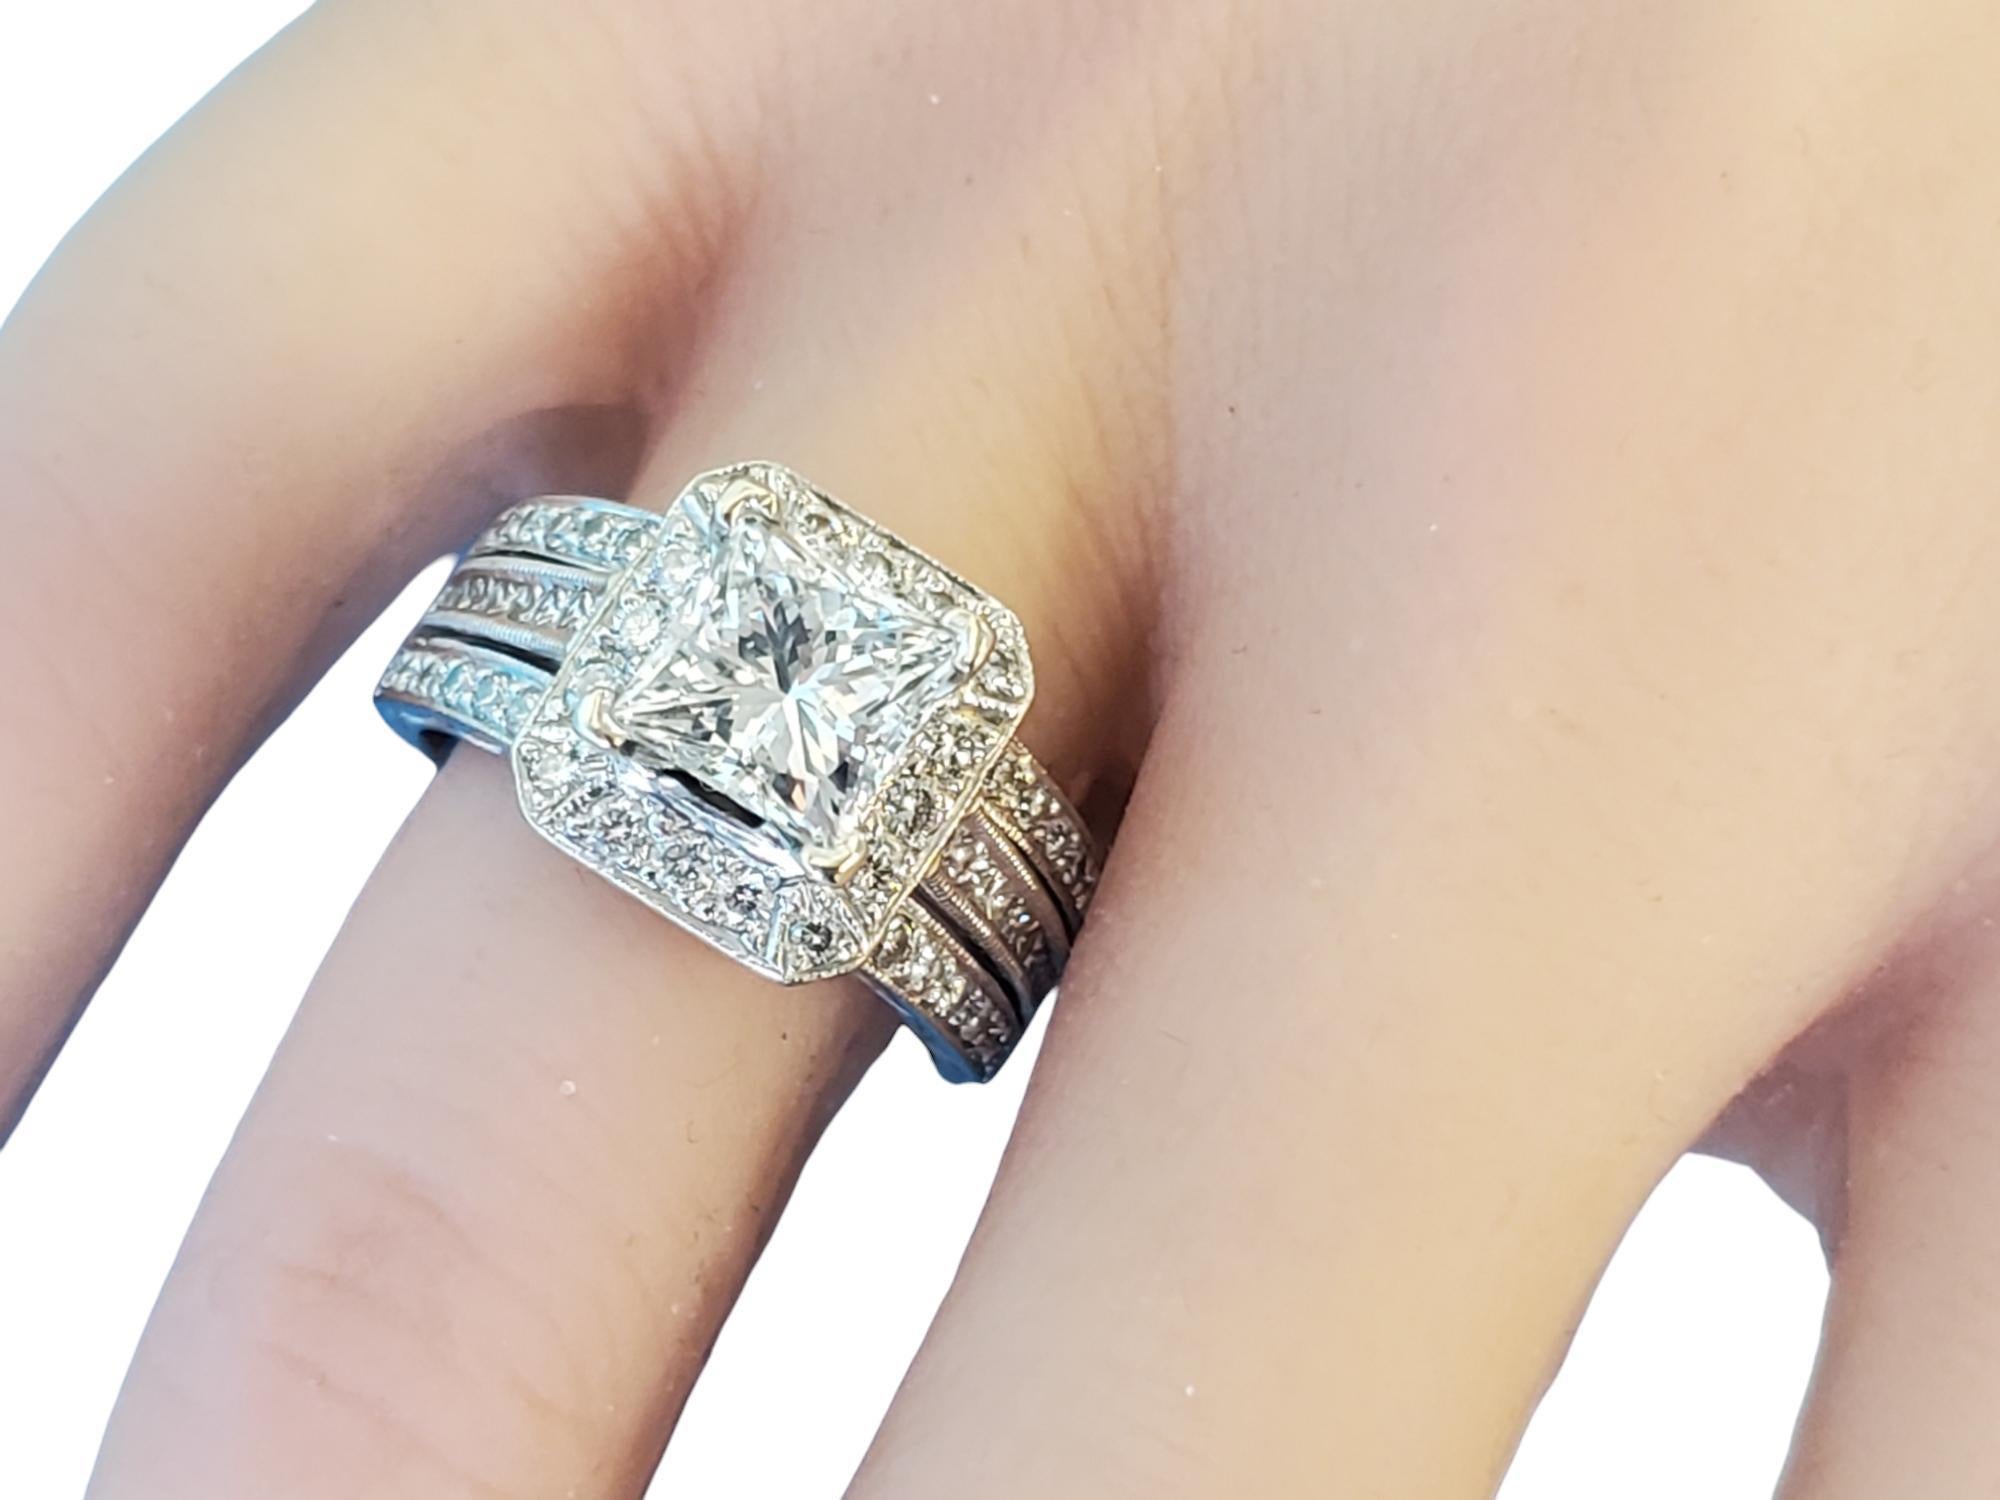 Natalie K 3.25tcw Princess Cut Wedding Ring

Whiting est une spectaculaire bague en or blanc 14k Natalie K avec un diamant princesse de 2,18ct G SI2 inscrit au laser par IGI report# 33422543. La pierre a été vérifiée et le rapport a été établi avant